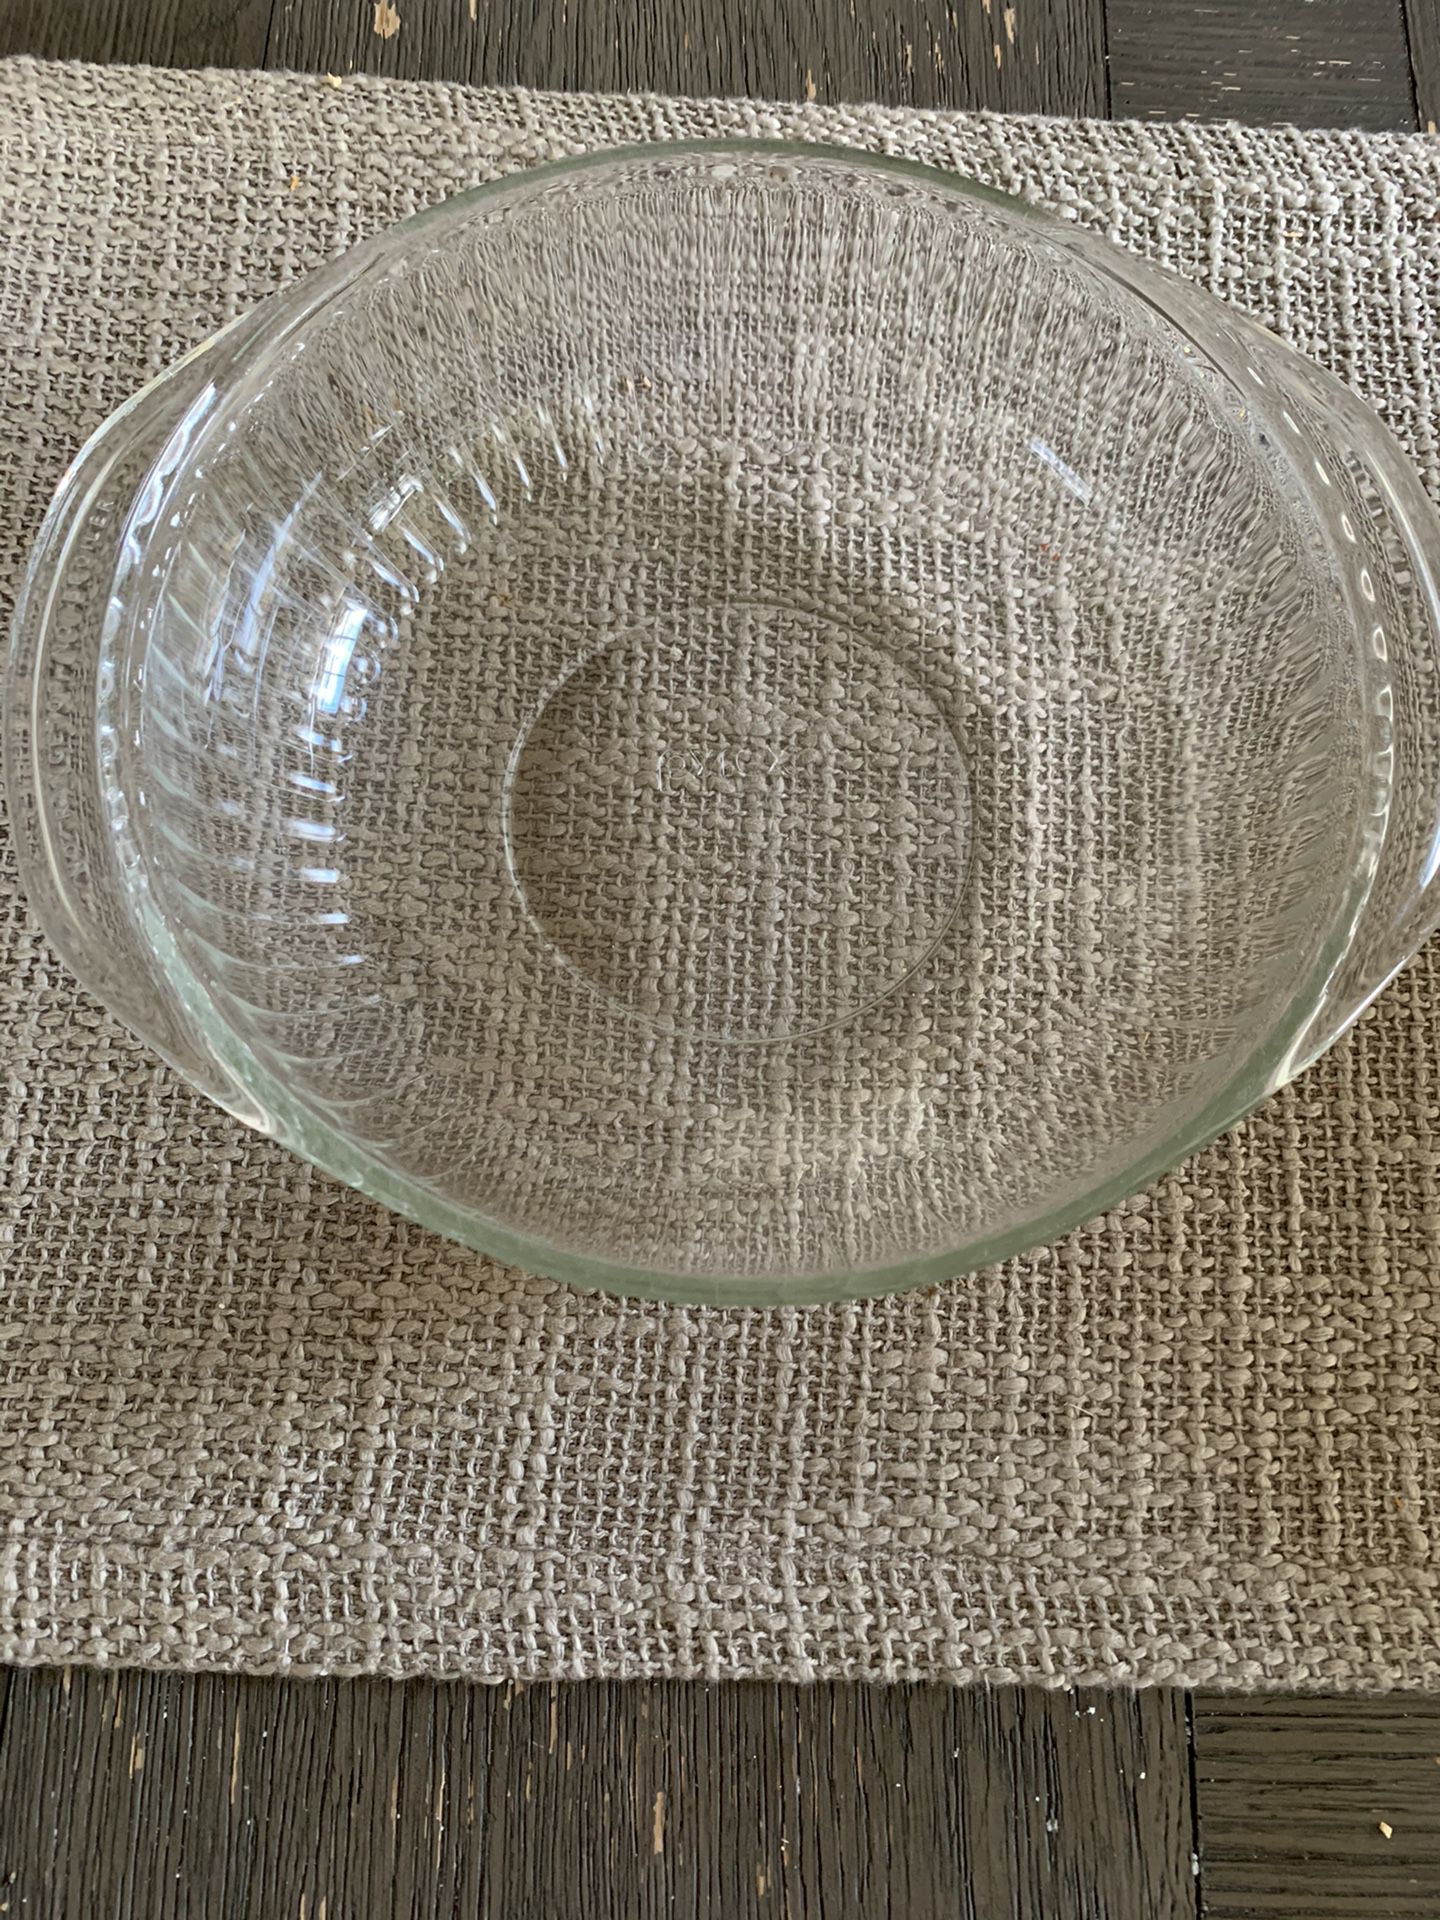 Mikasa glass serving platter, glass quiche platter, and Pyrex bowls